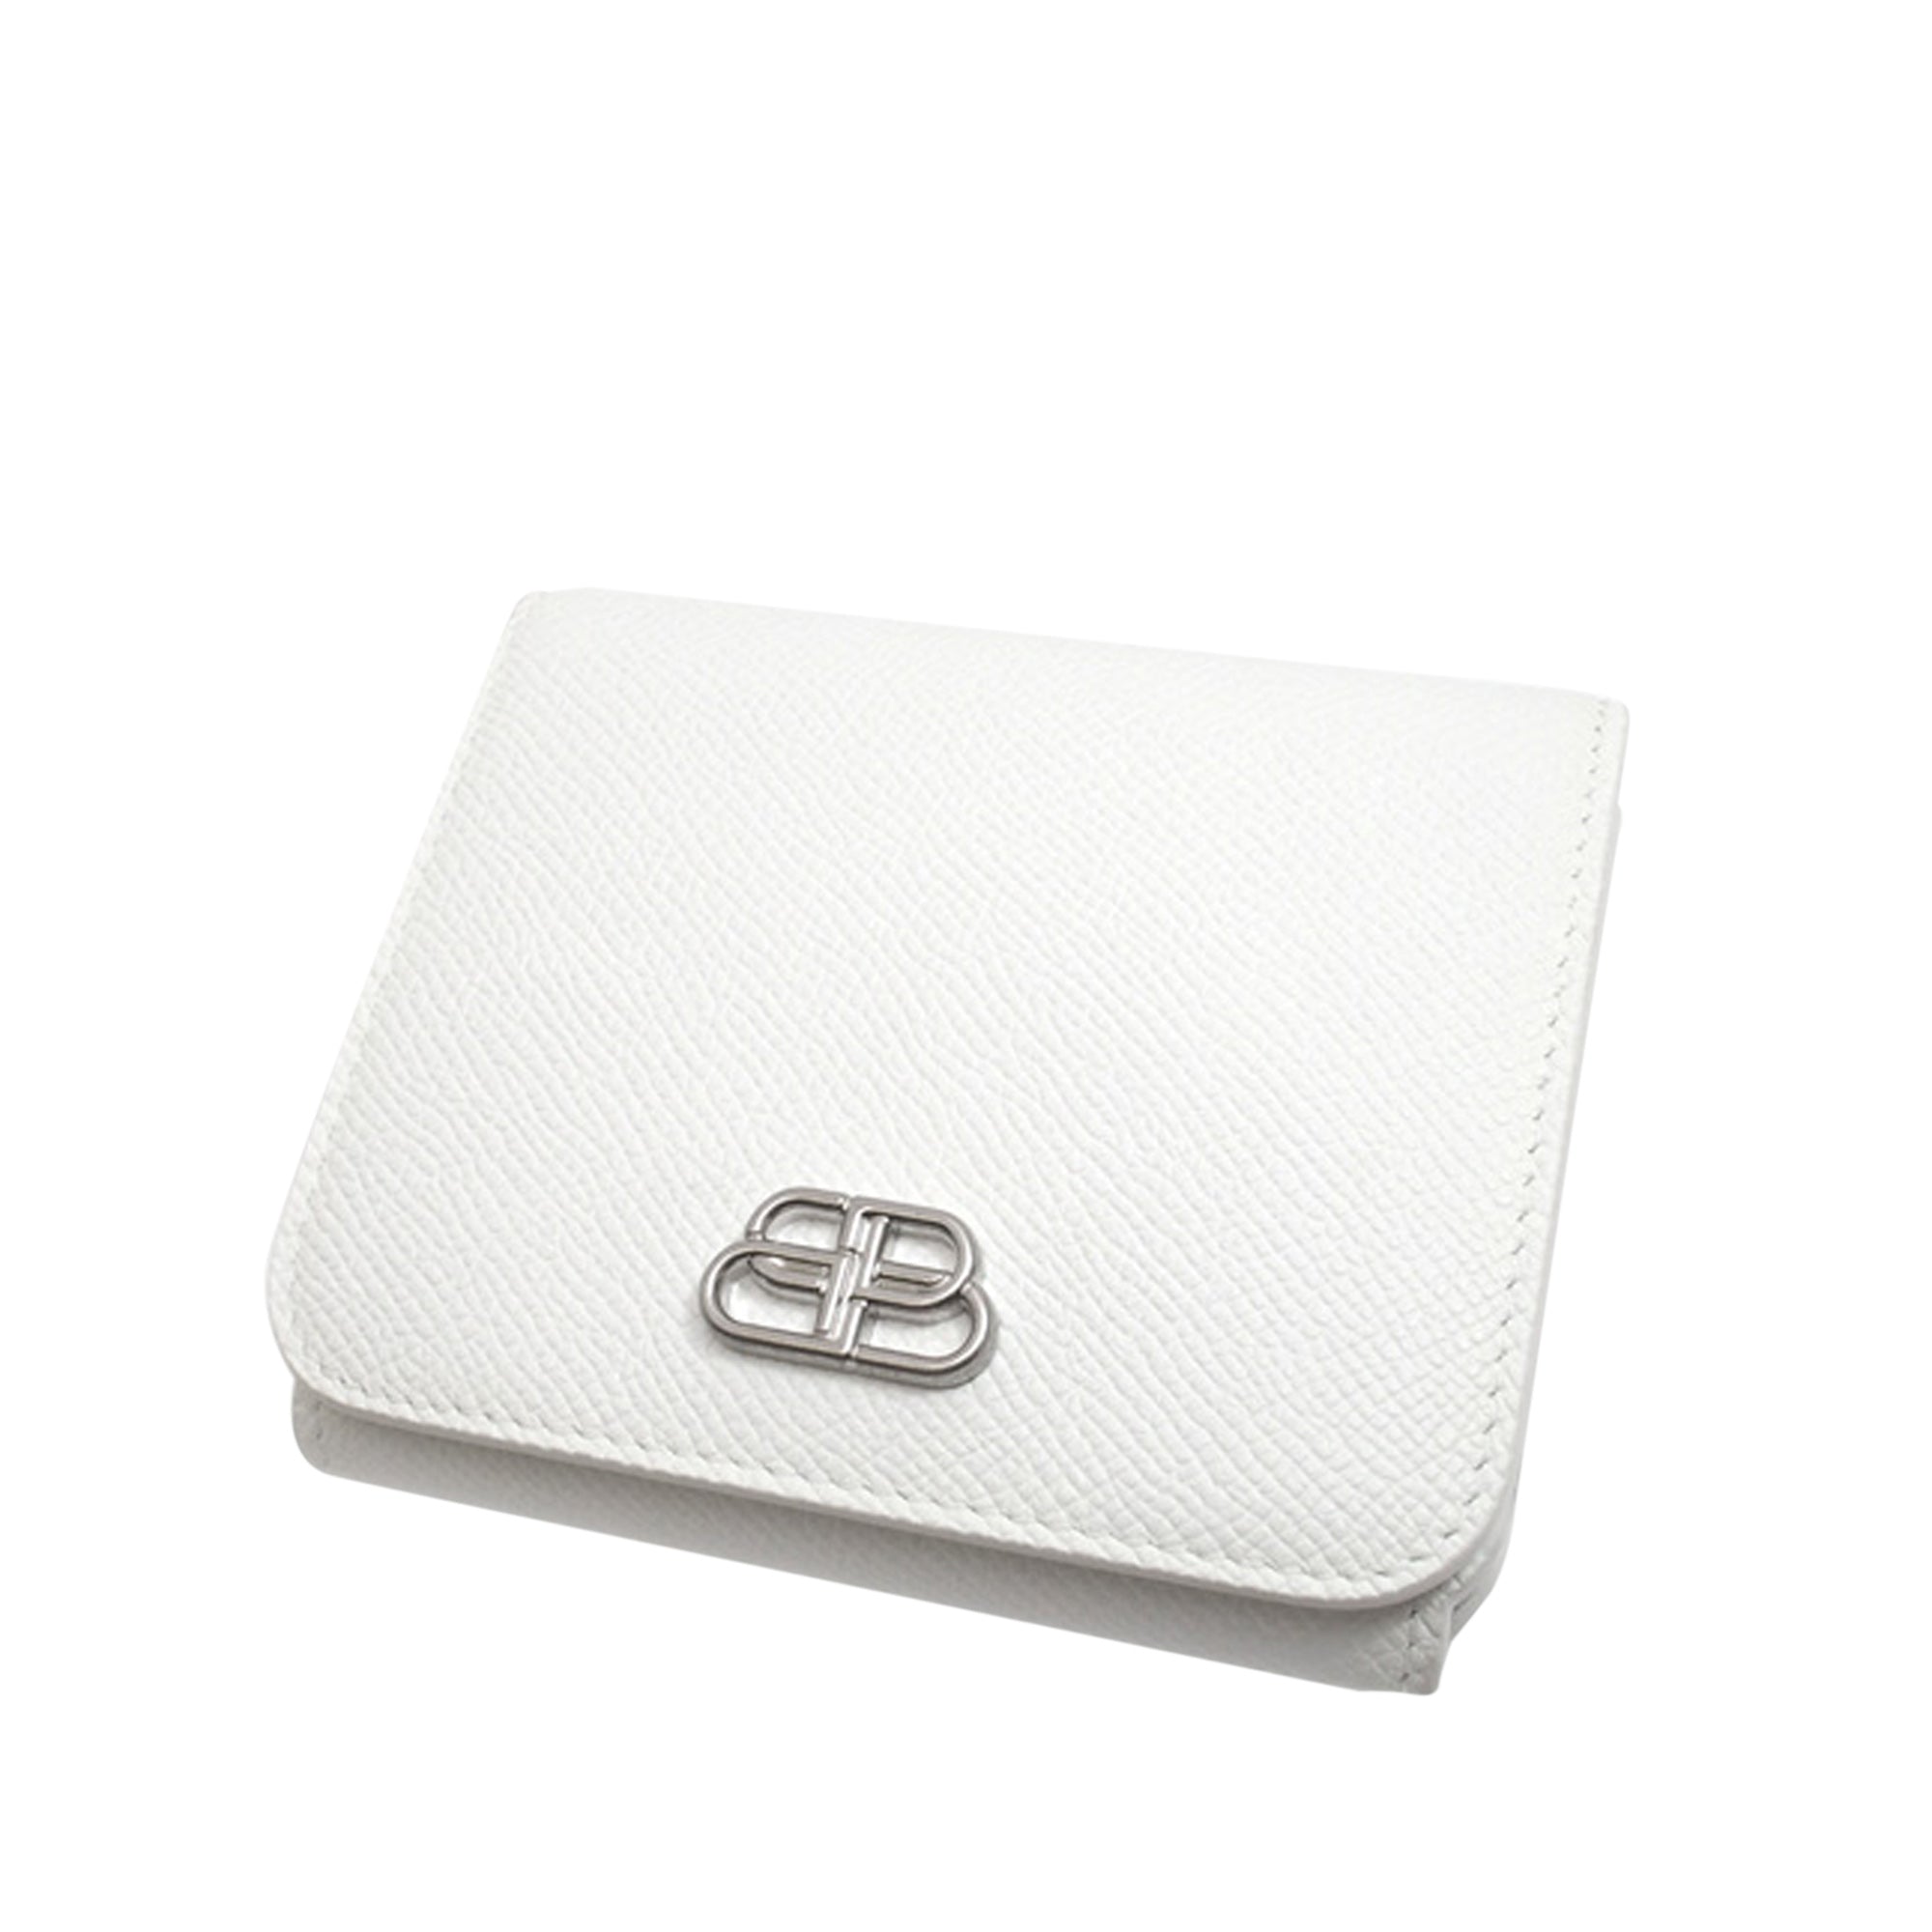 white balenciaga wallet